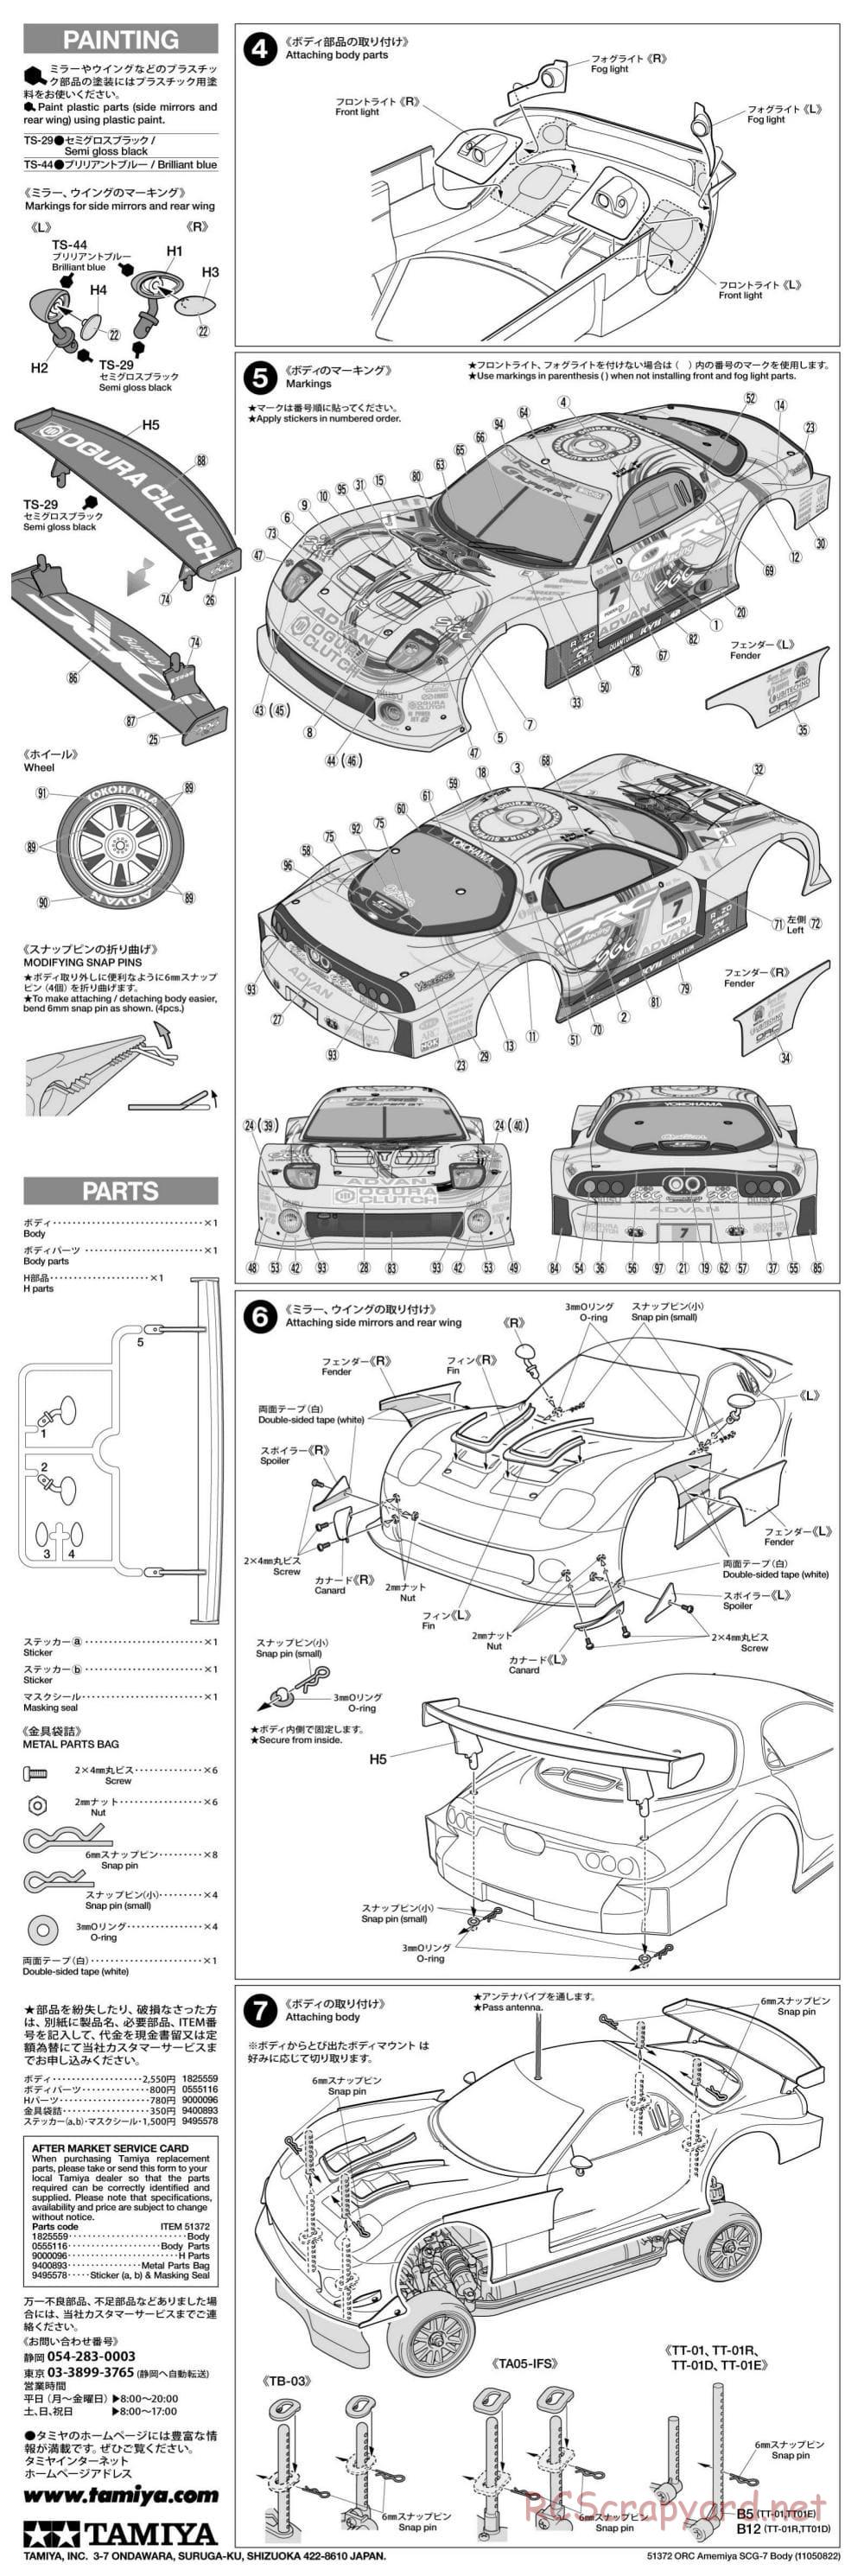 Tamiya - ORC Amemiya SGC-7 - TB-03 Chassis - Body Manual - Page 2